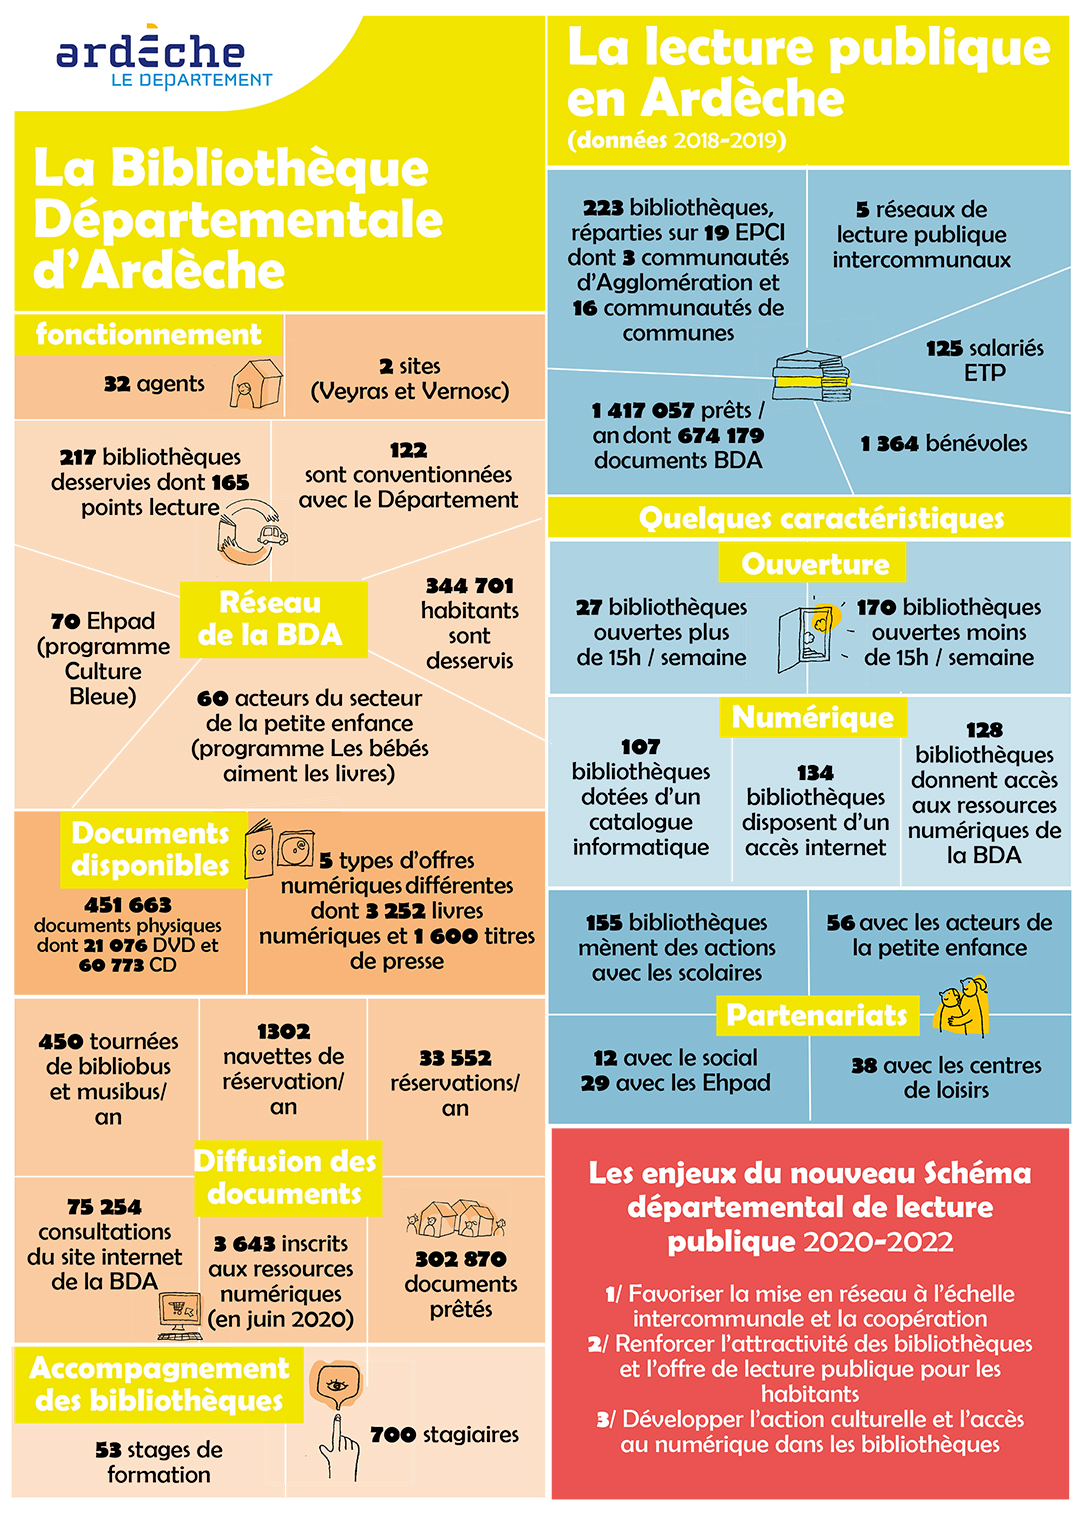 Poster présentant les principaux chiffres de la lecture publique en Ardèche